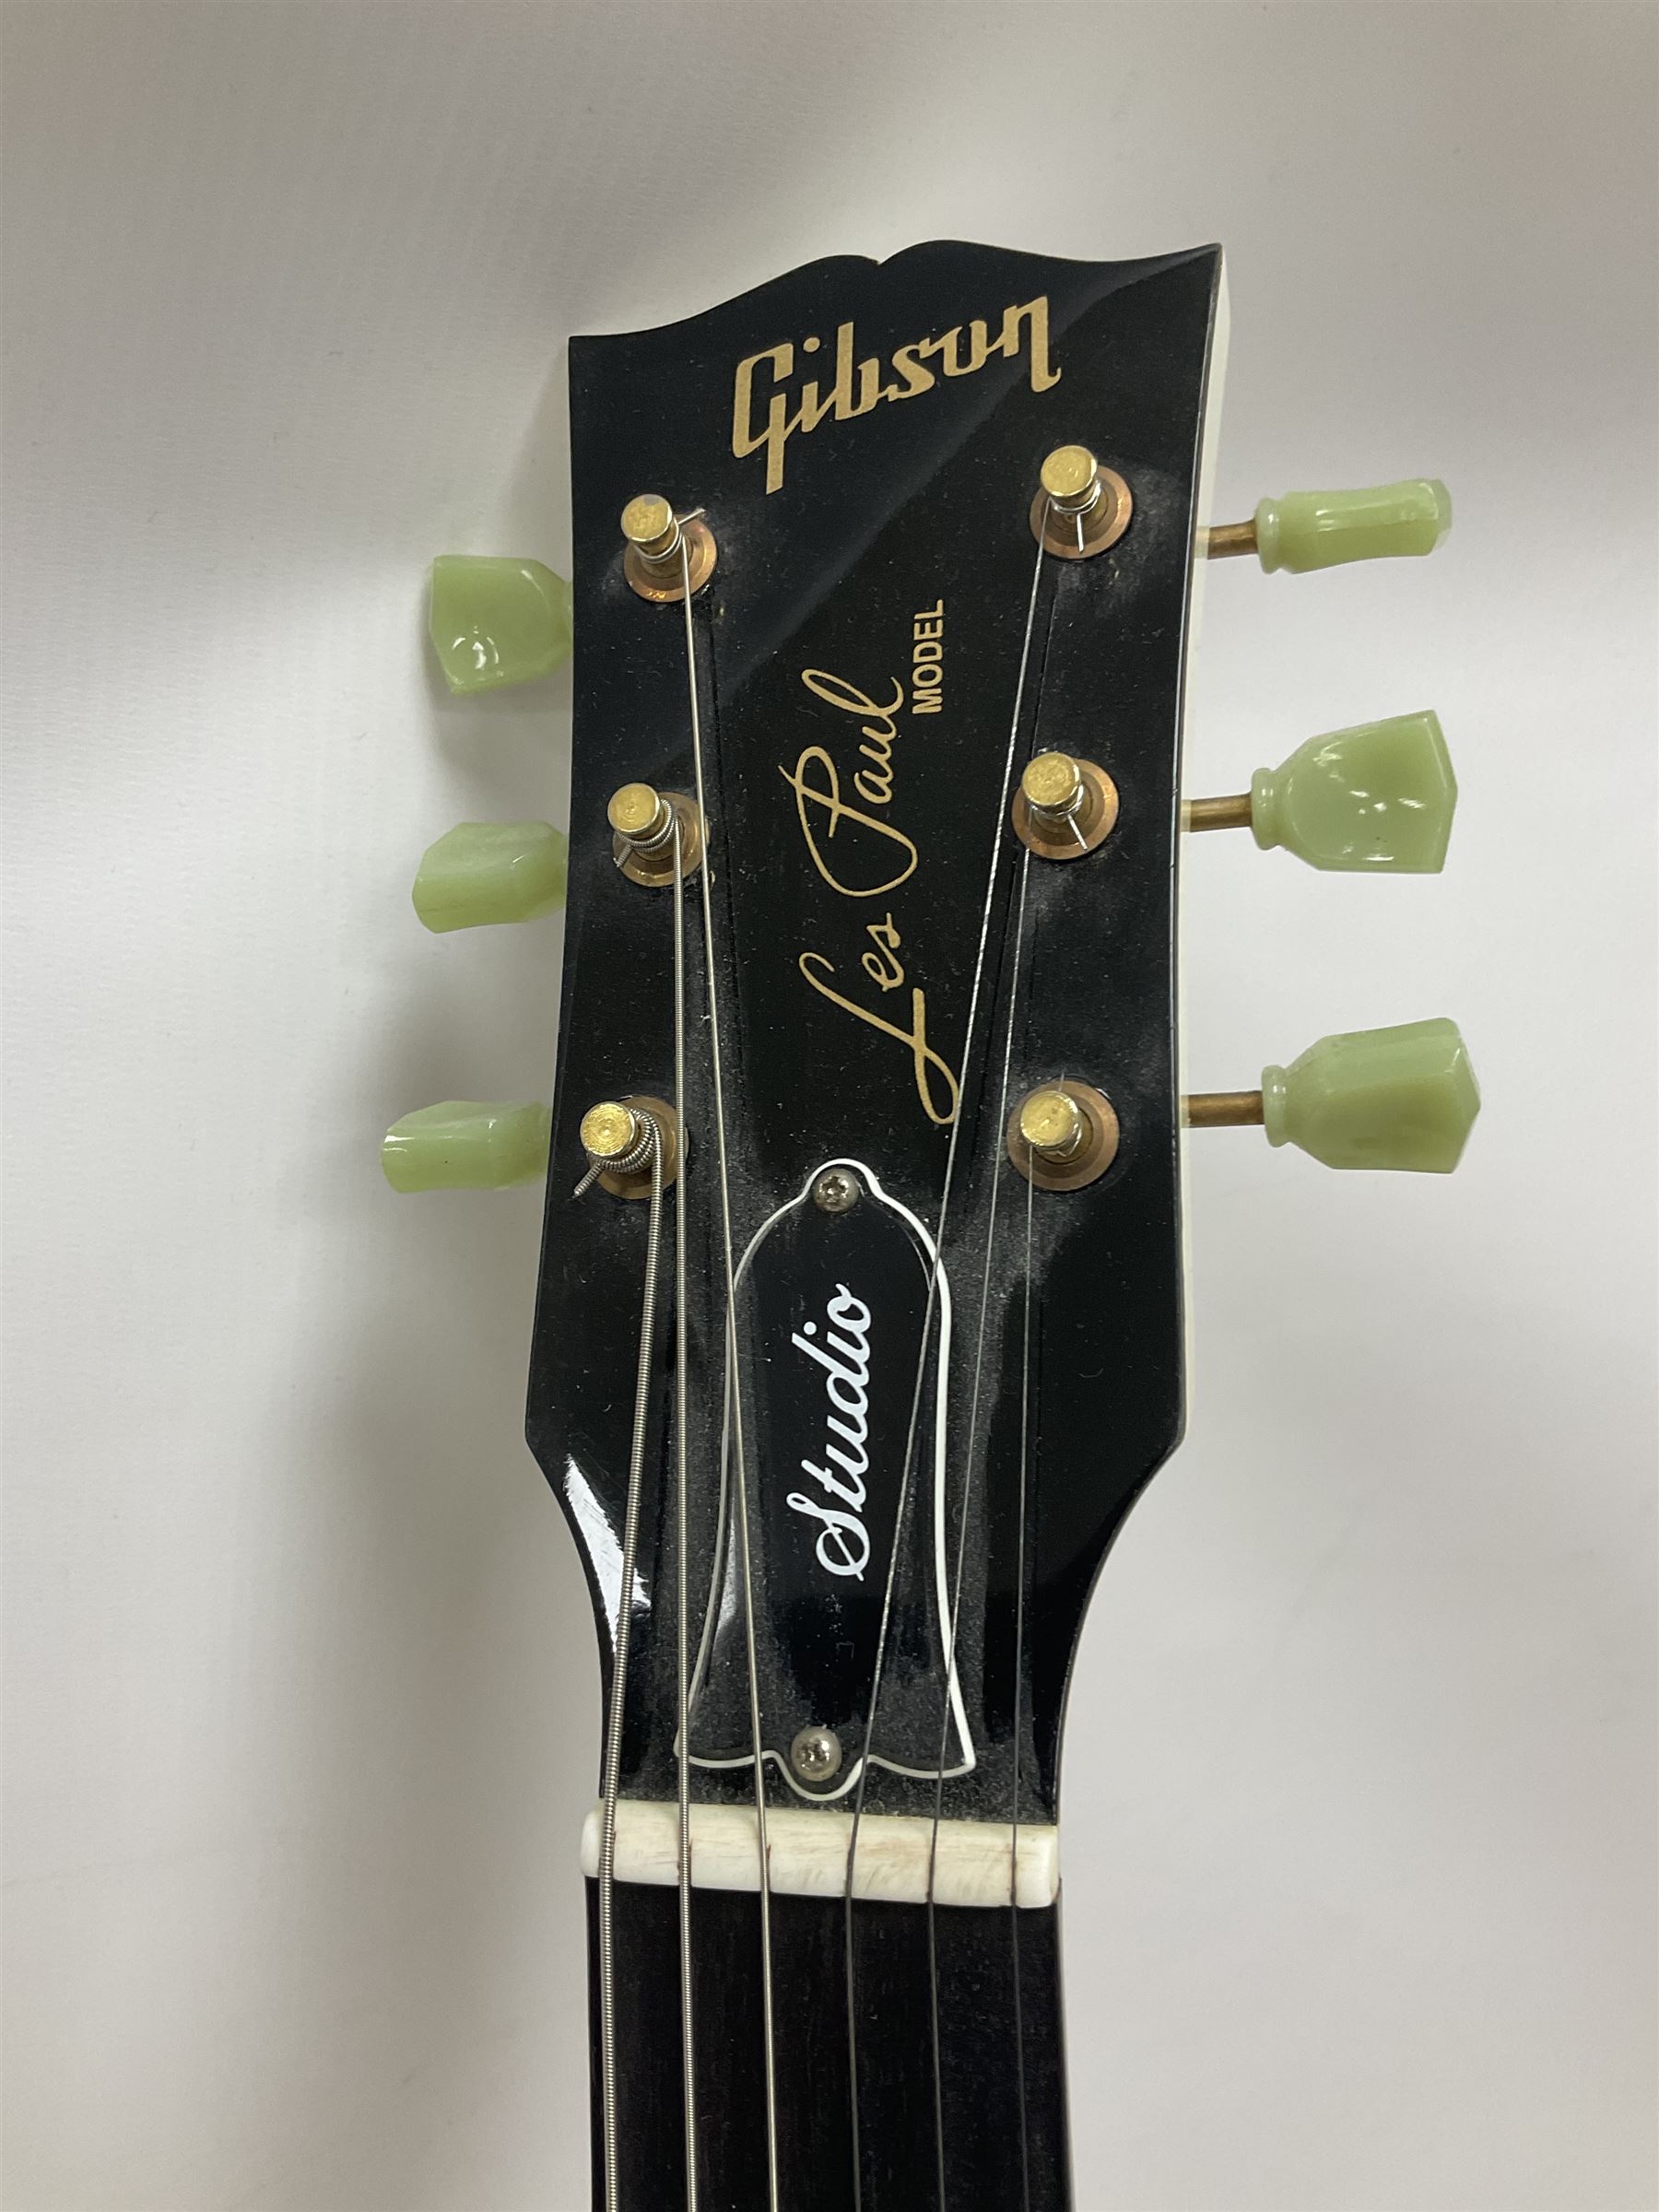 2010 Gibson Les Paul studio guitar - Image 12 of 24